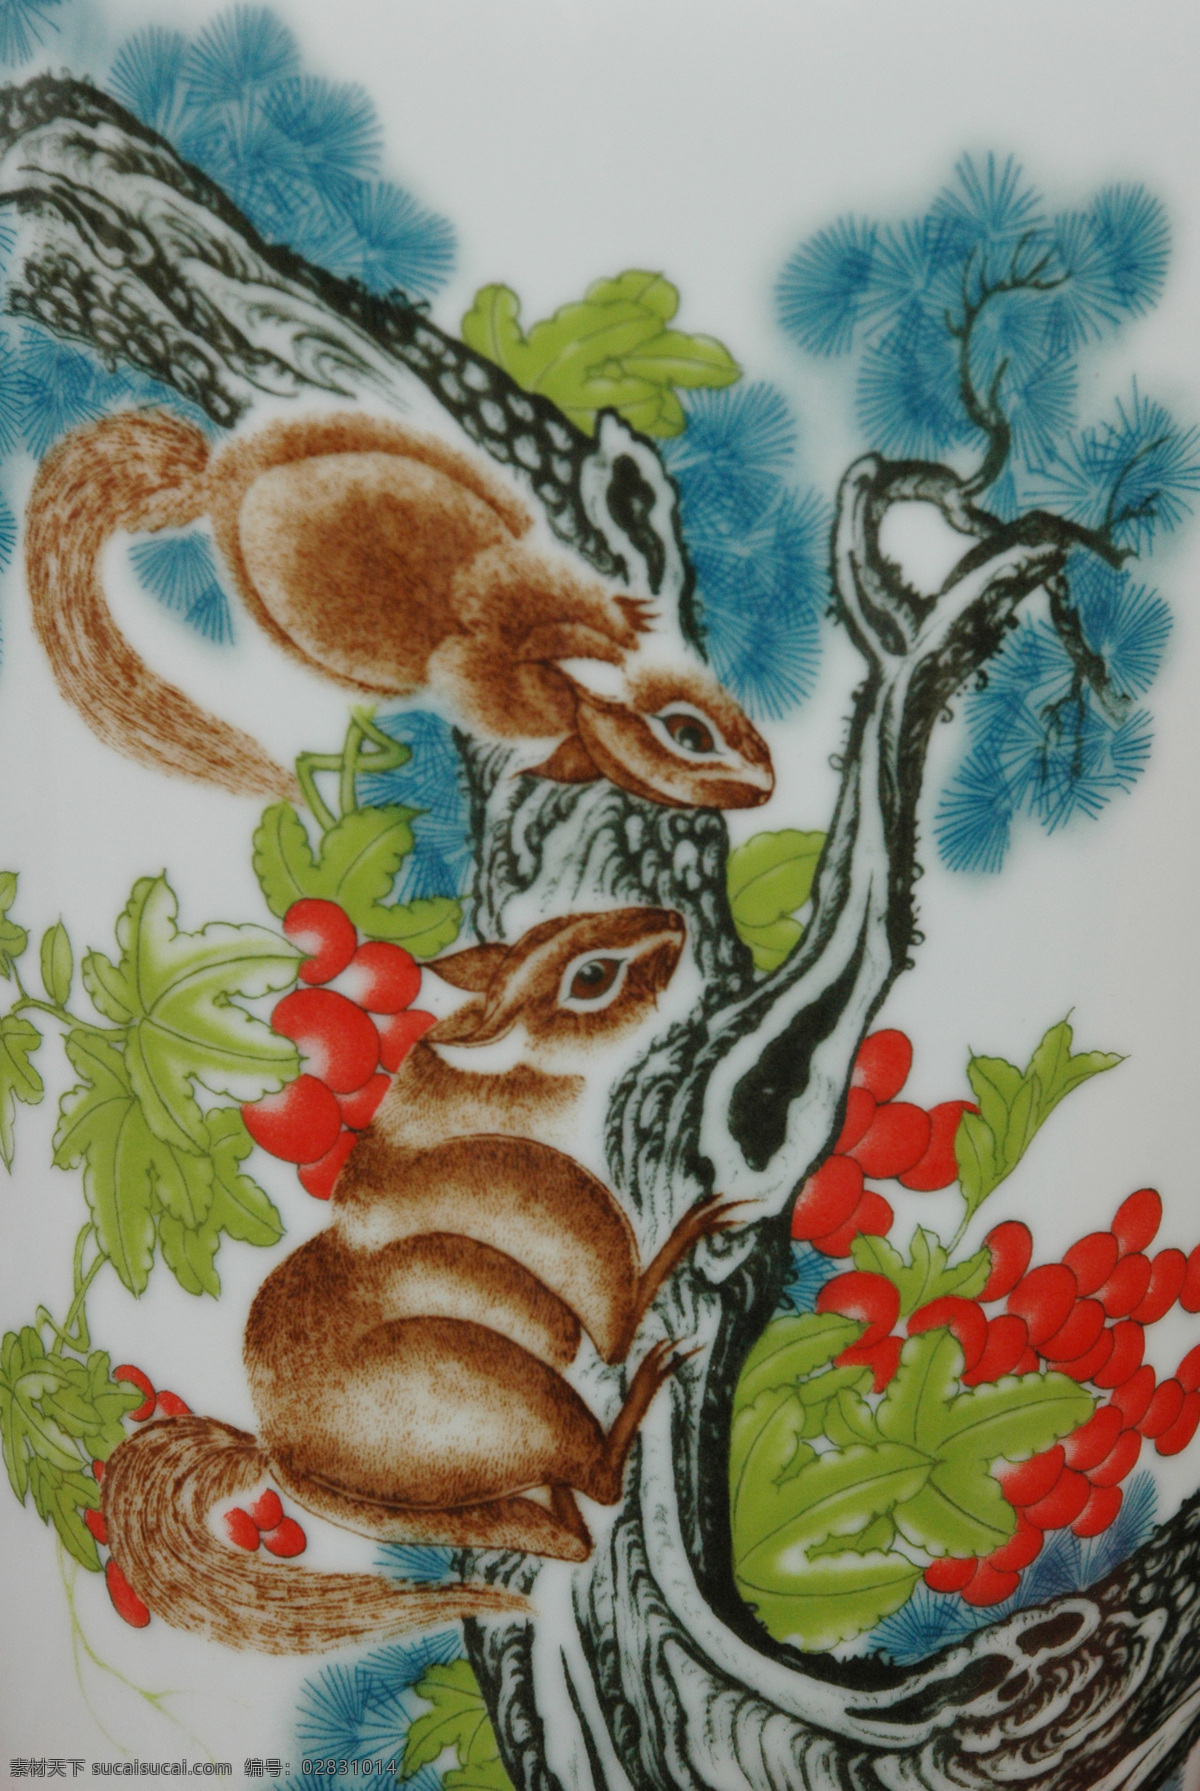 手绘 松鼠 国画 油画 插画 装饰画 无框画 底纹背景 彩绘 素描 中国风 书画文字 文化艺术